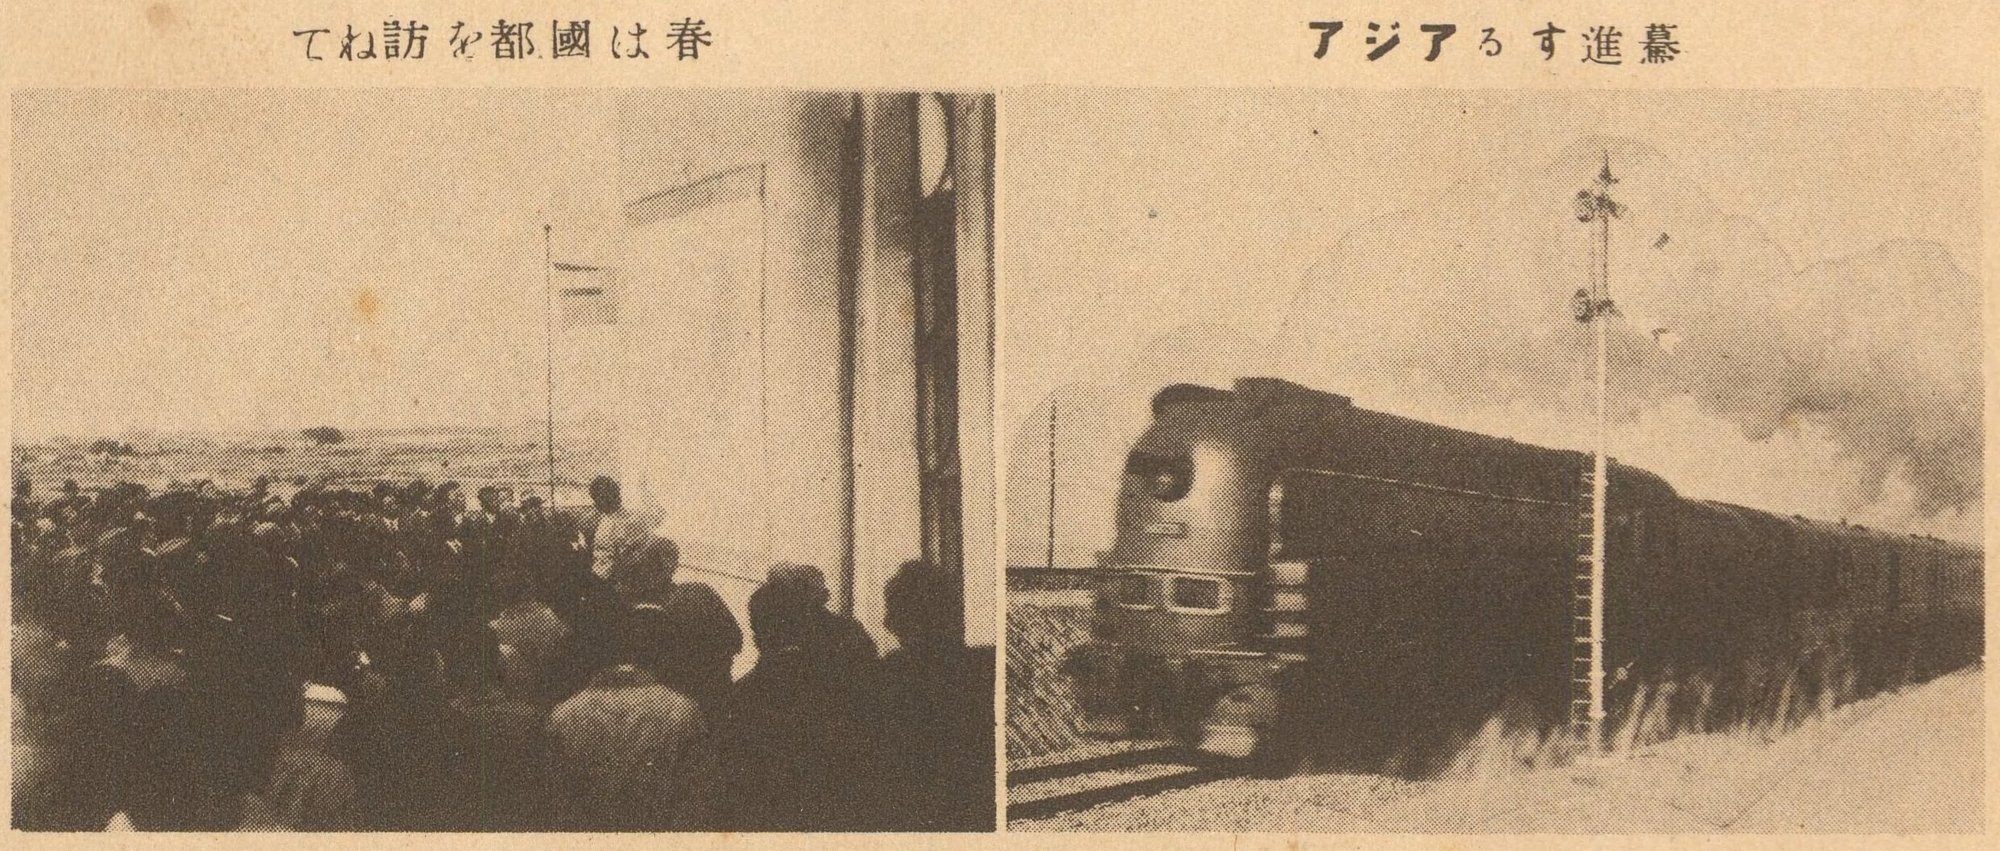 Kokuto kensetsu hansei chikashi. 1936. Detail